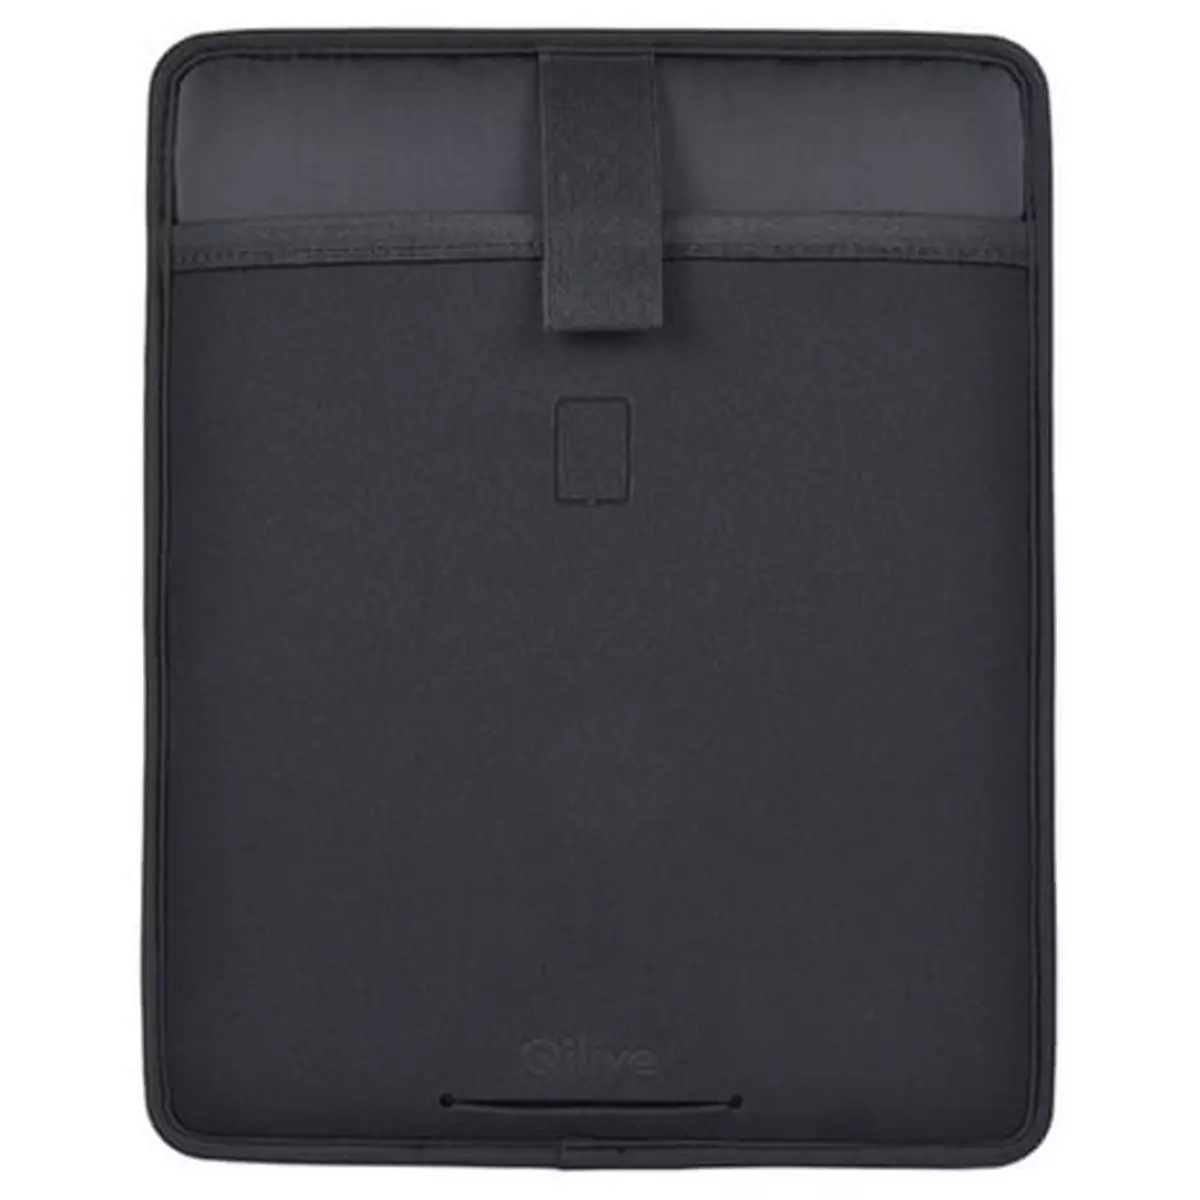 QILIVE Organiseur pour tablette 10"/téléphone portable - Noir